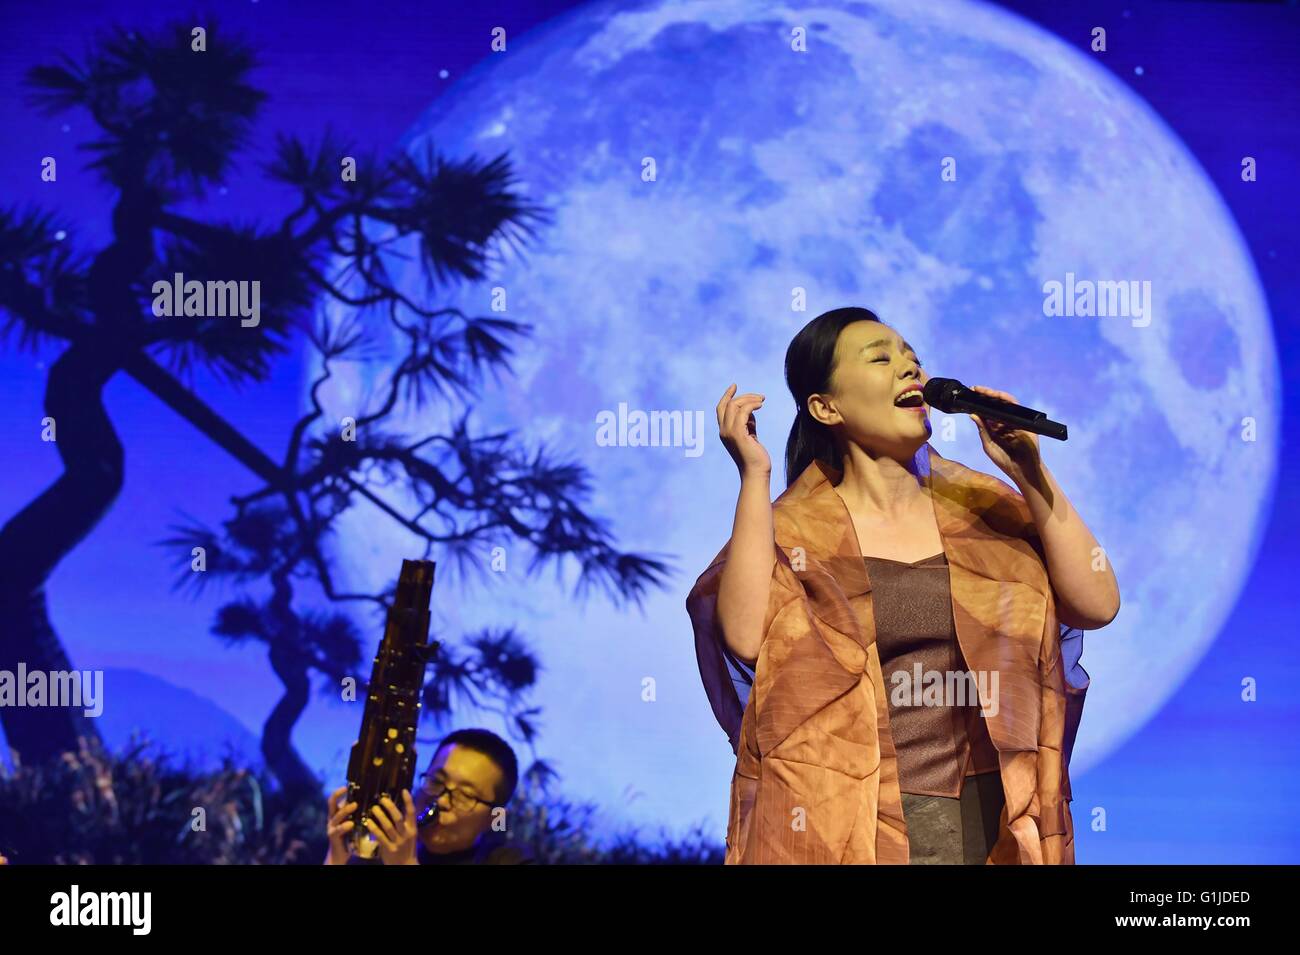 Pechino, Cina. 16 Maggio, 2016. Il cantante Gong Linna canta la canzone 'una tranquilla notte' durante la fase di apertura del 2016 Pechino studenti del College Music Festival presso la Cina del Conservatorio di Musica di Pechino, capitale della Cina, 16 maggio 2016. "Gioventù, campus, di arte e di vita" è il tema del festival di musica, che durerà fino alla fine dell'anno. Spettacoli di musica di diverse categorie sarà dato a 19 università e college. © Li Wen/Xinhua/Alamy Live News Foto Stock